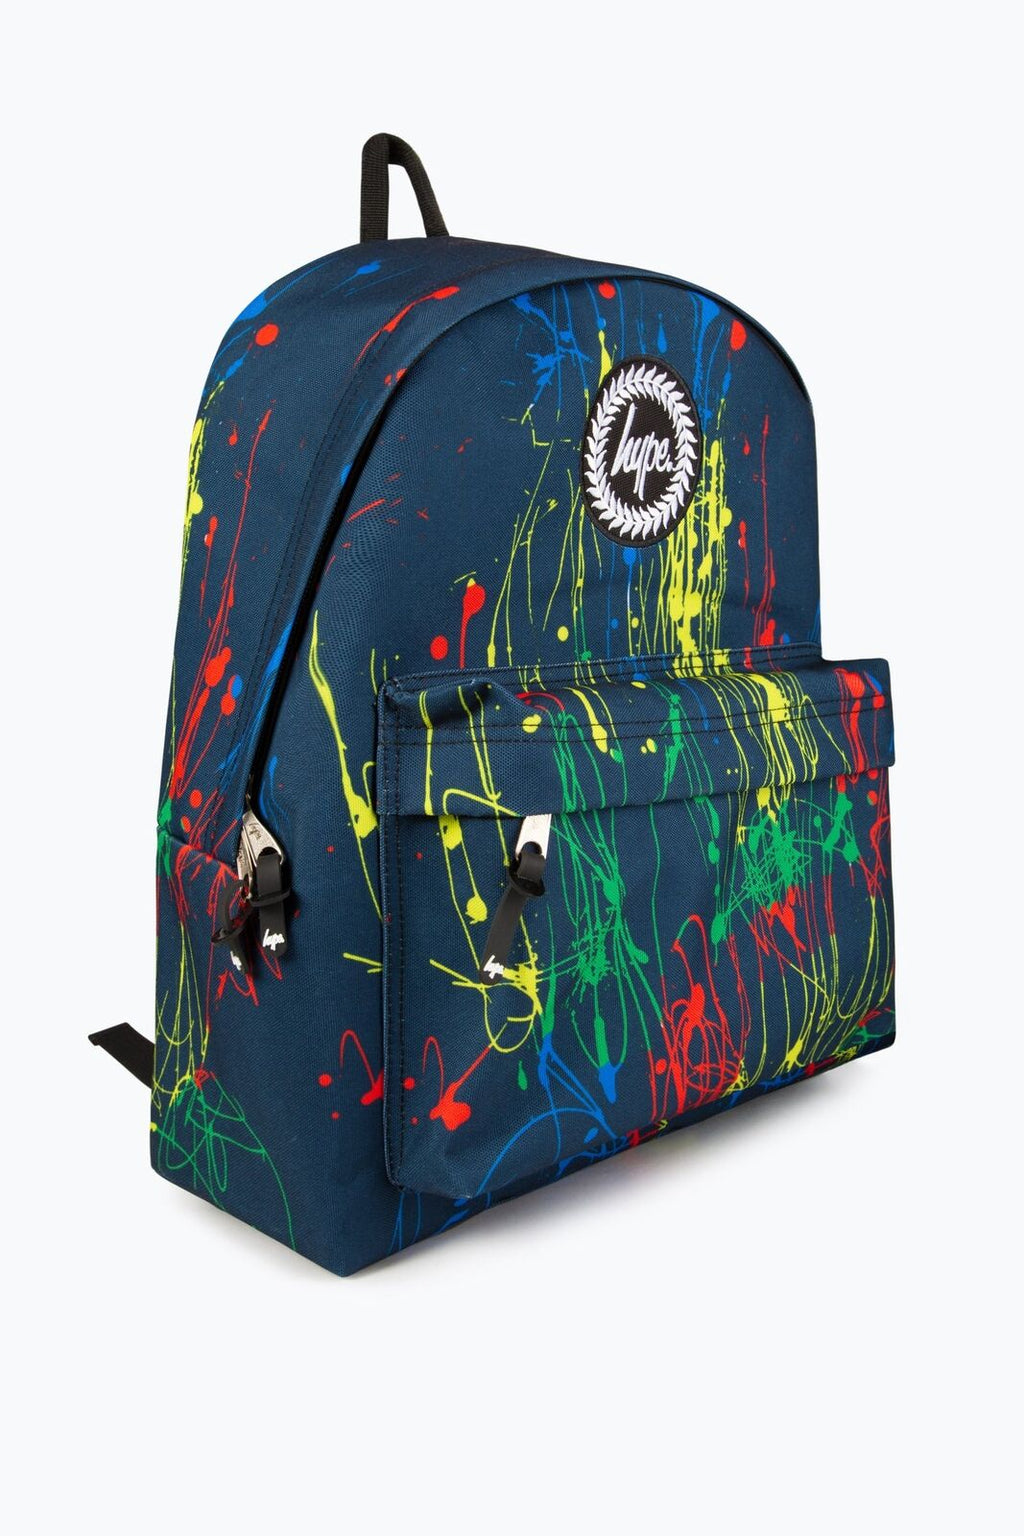 Hype Boys Navy Primary Splatter Backpack